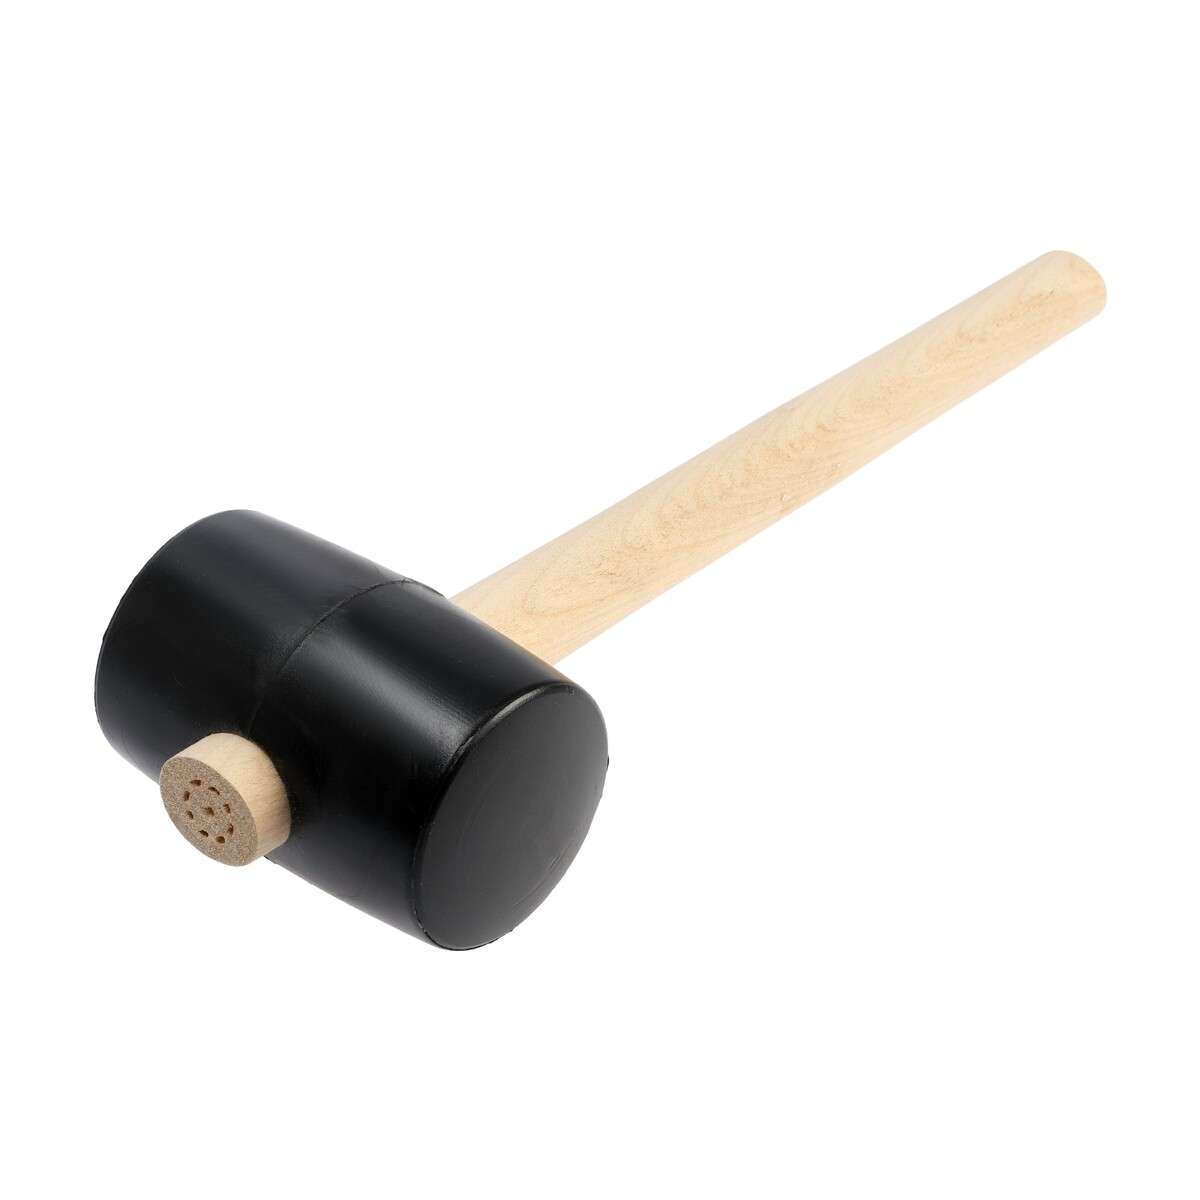 Киянка лом, деревянная рукоятка, черная резина, 65 мм, 500 г киянка тундра деревянная рукоятка черная резина 65 мм 680 г